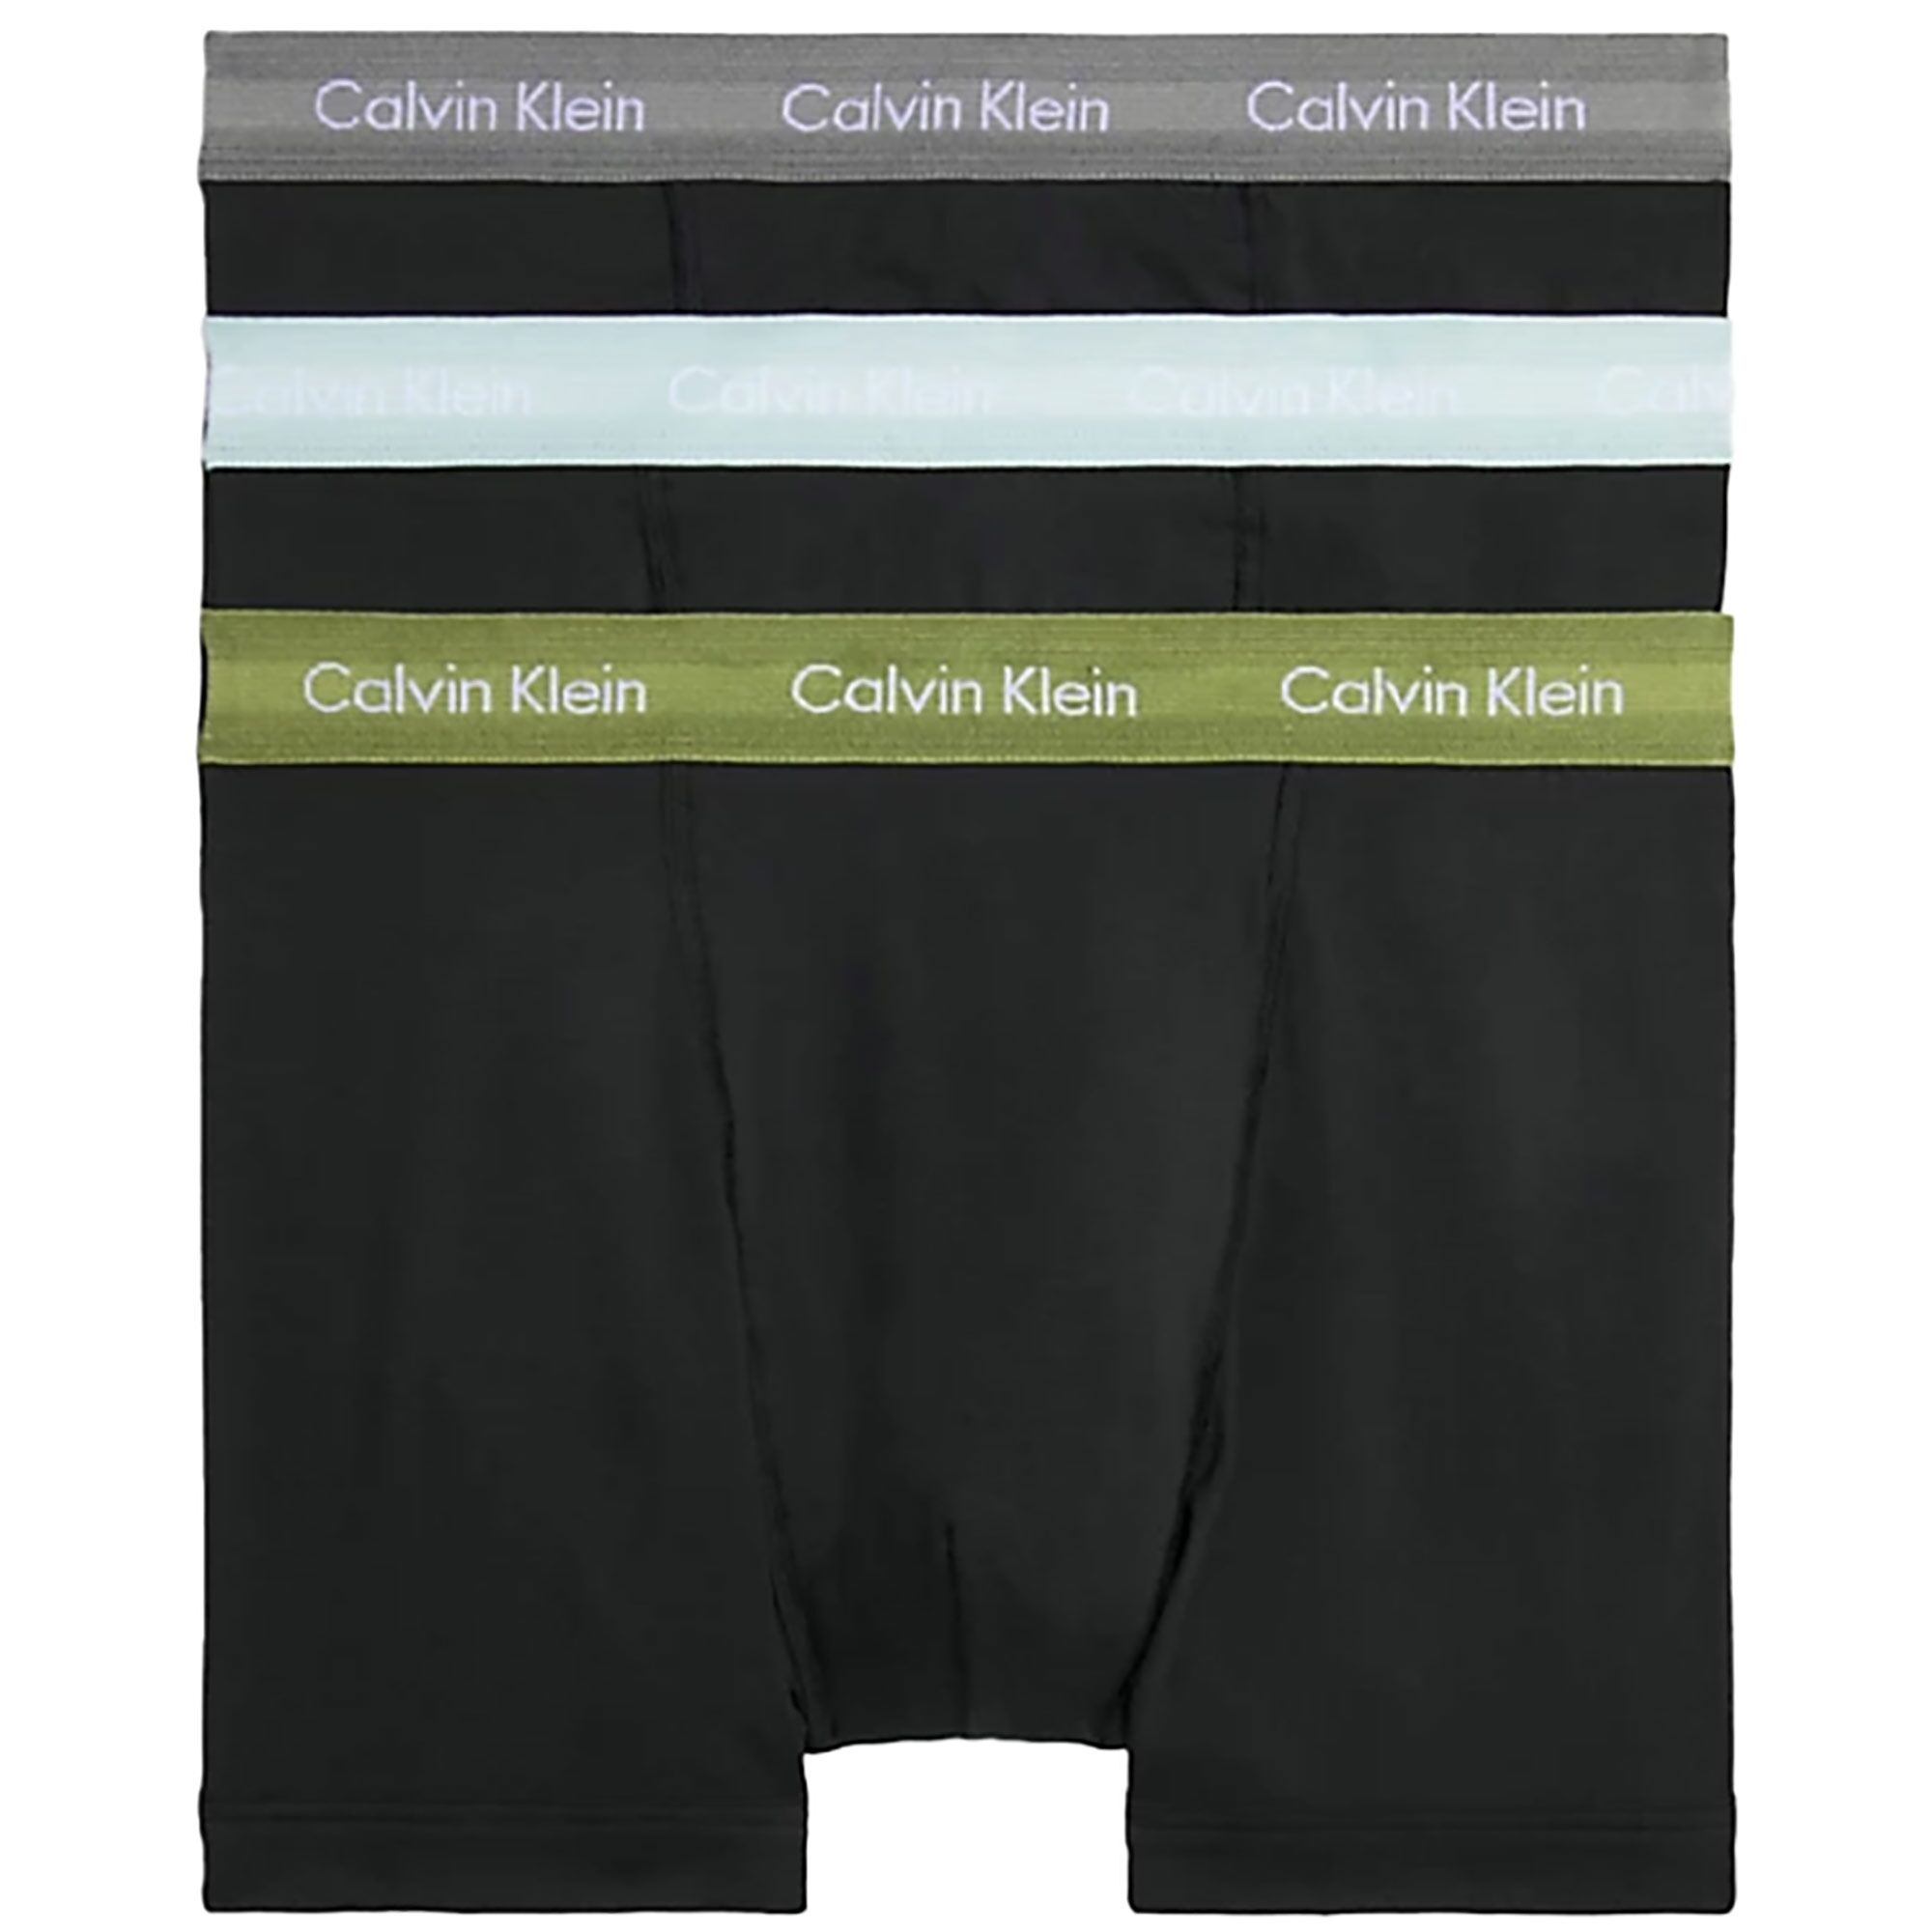 Calvin Klein 3 Pack Trunks - Black - 2662G-H5N TRUNK 3PK- Men